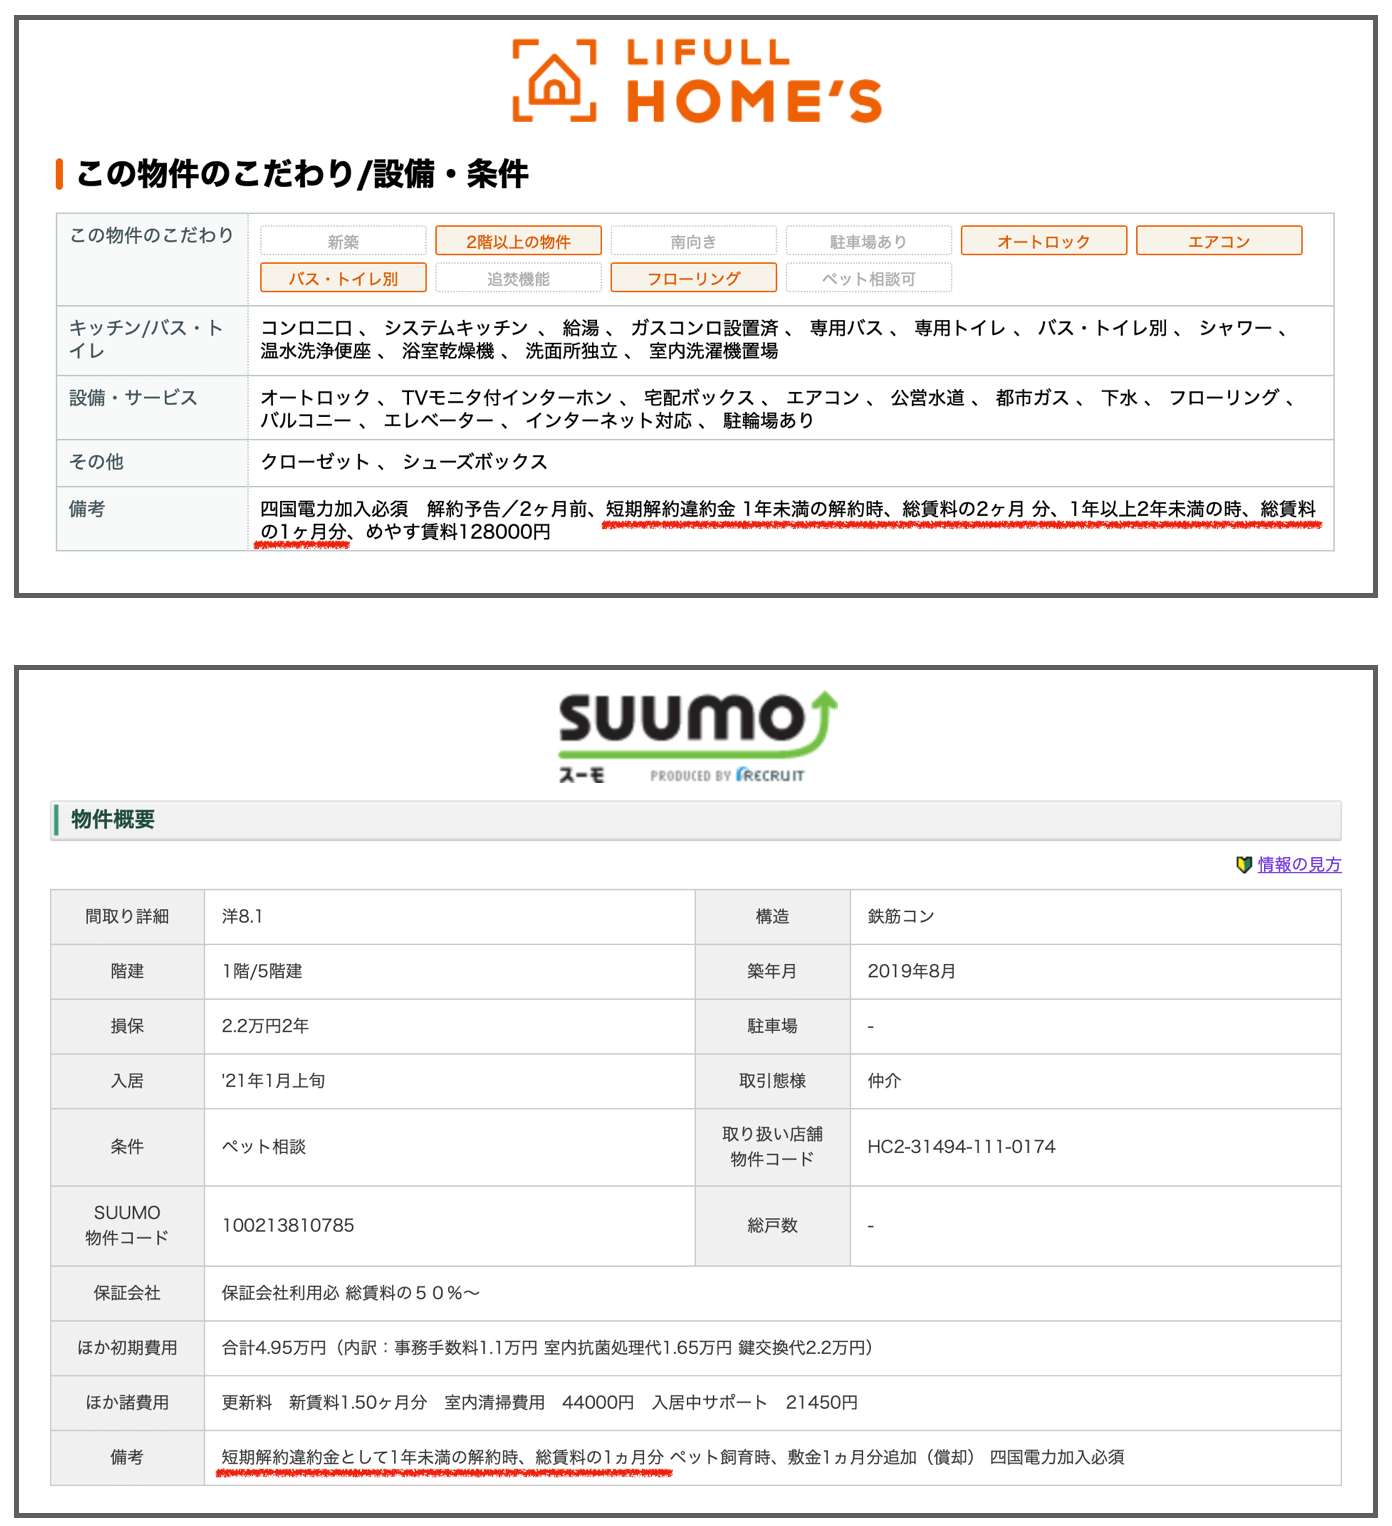 HOME'SとSUUMOの物件詳細ページ